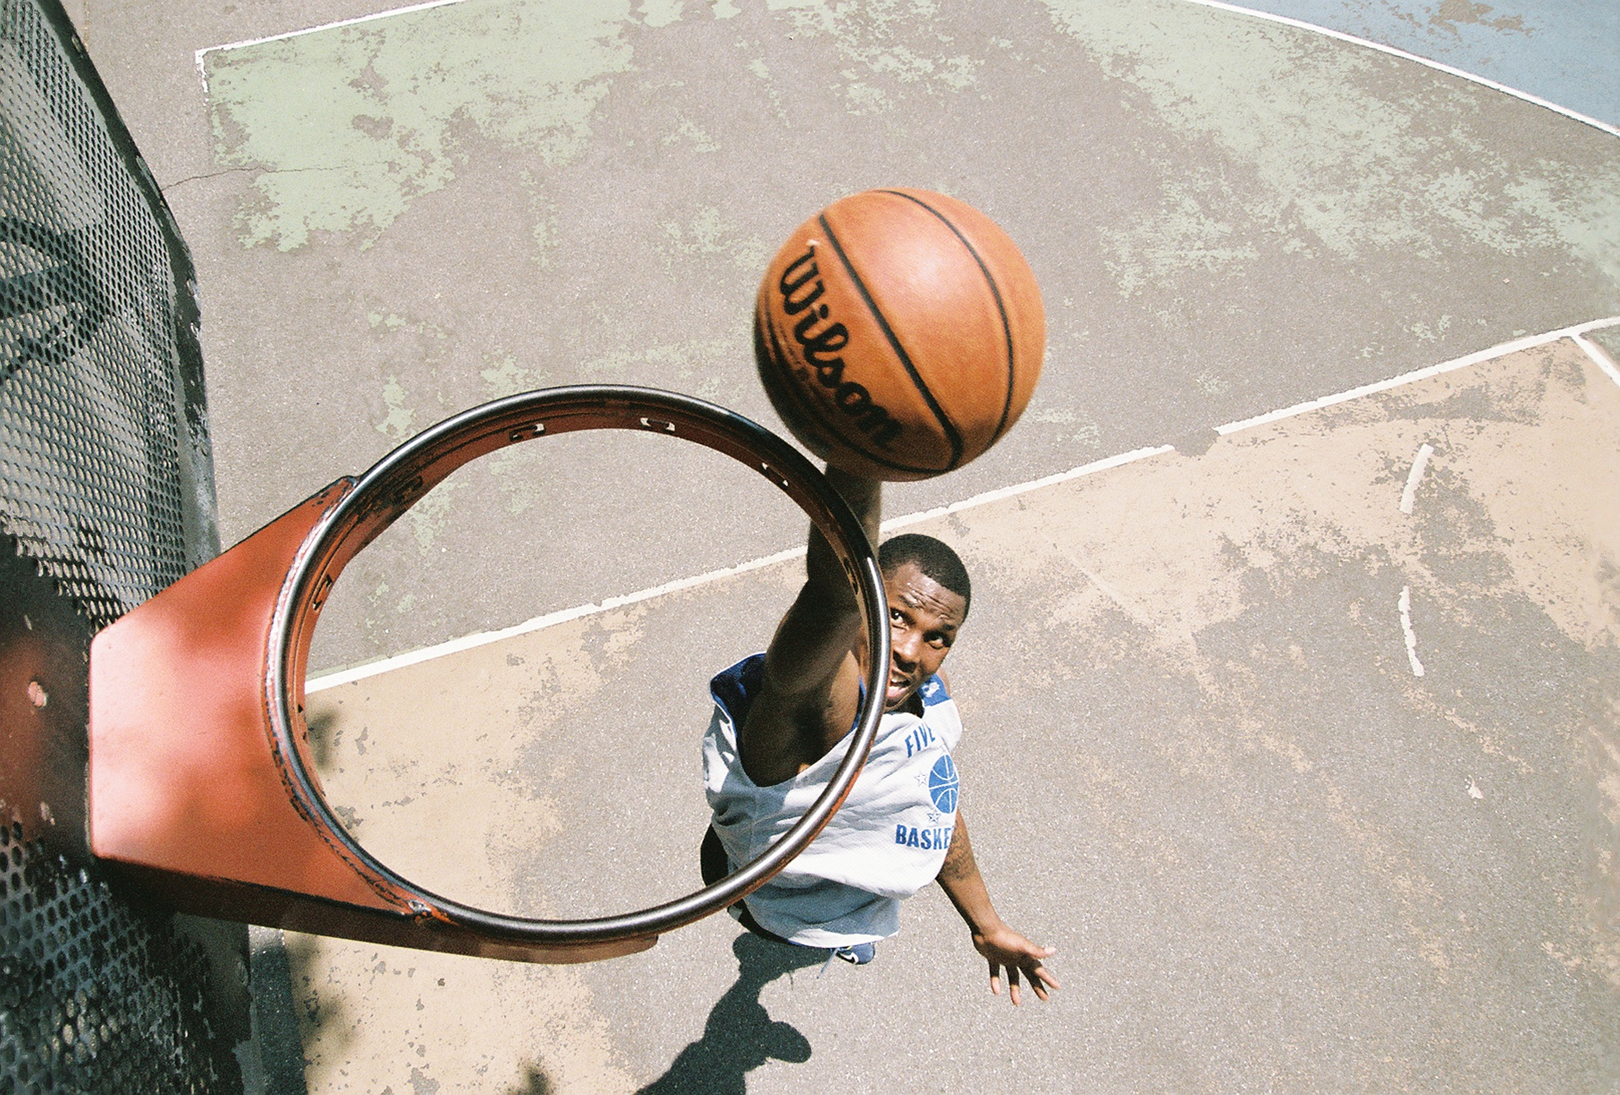 ネットなしのバスケットボールのフープの上からの眺め、プレーヤーがフープを通してバスケットボールをダンクしようとしているところ